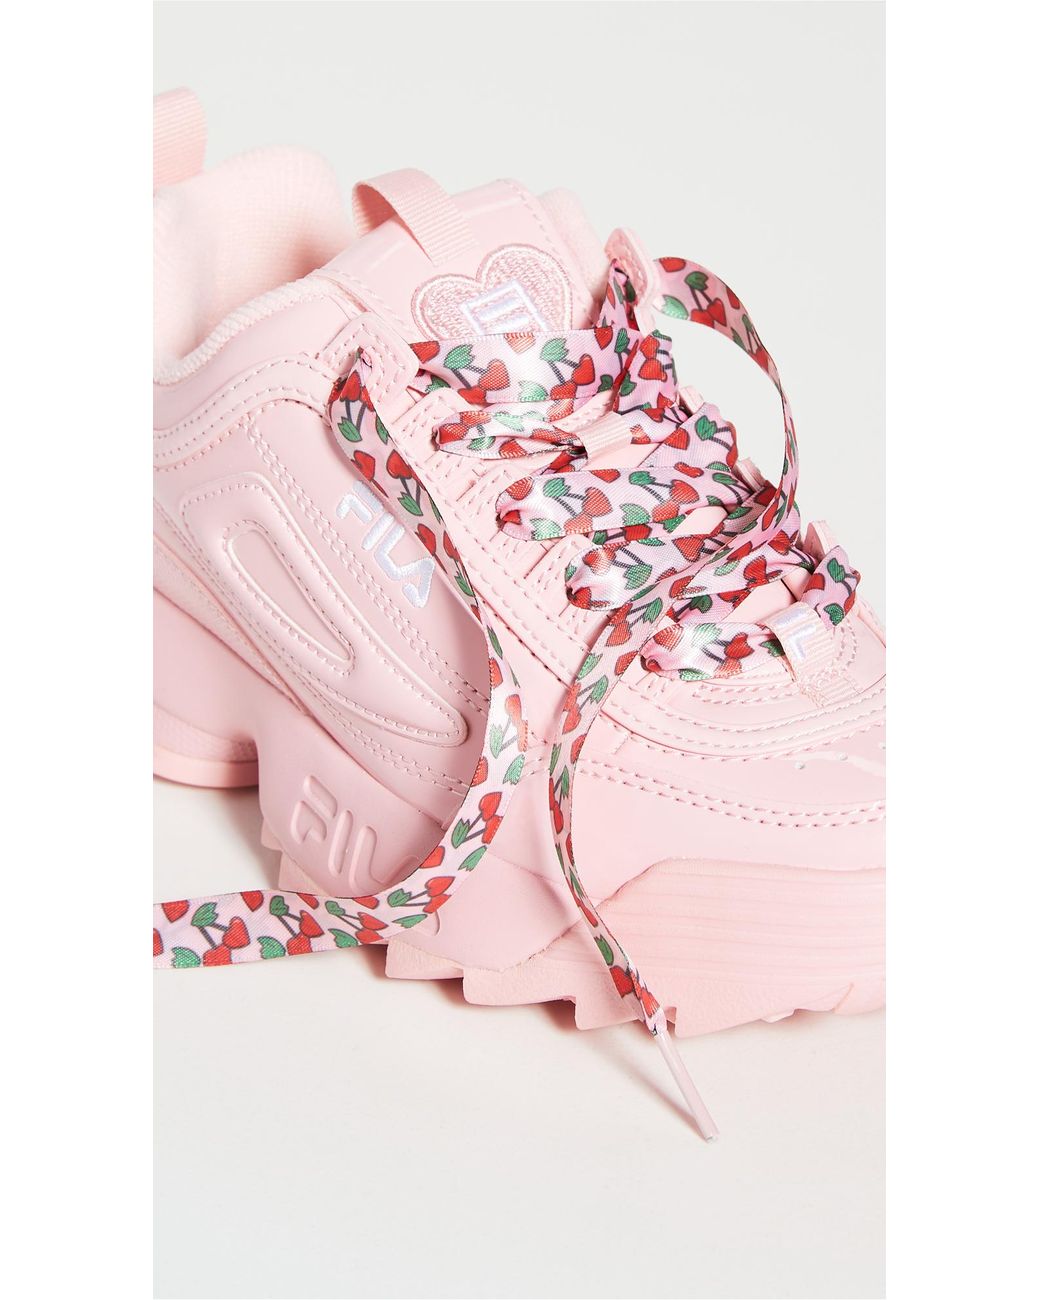 Fila Disruptor Ii Heart Sneakers in Pink | Lyst Canada